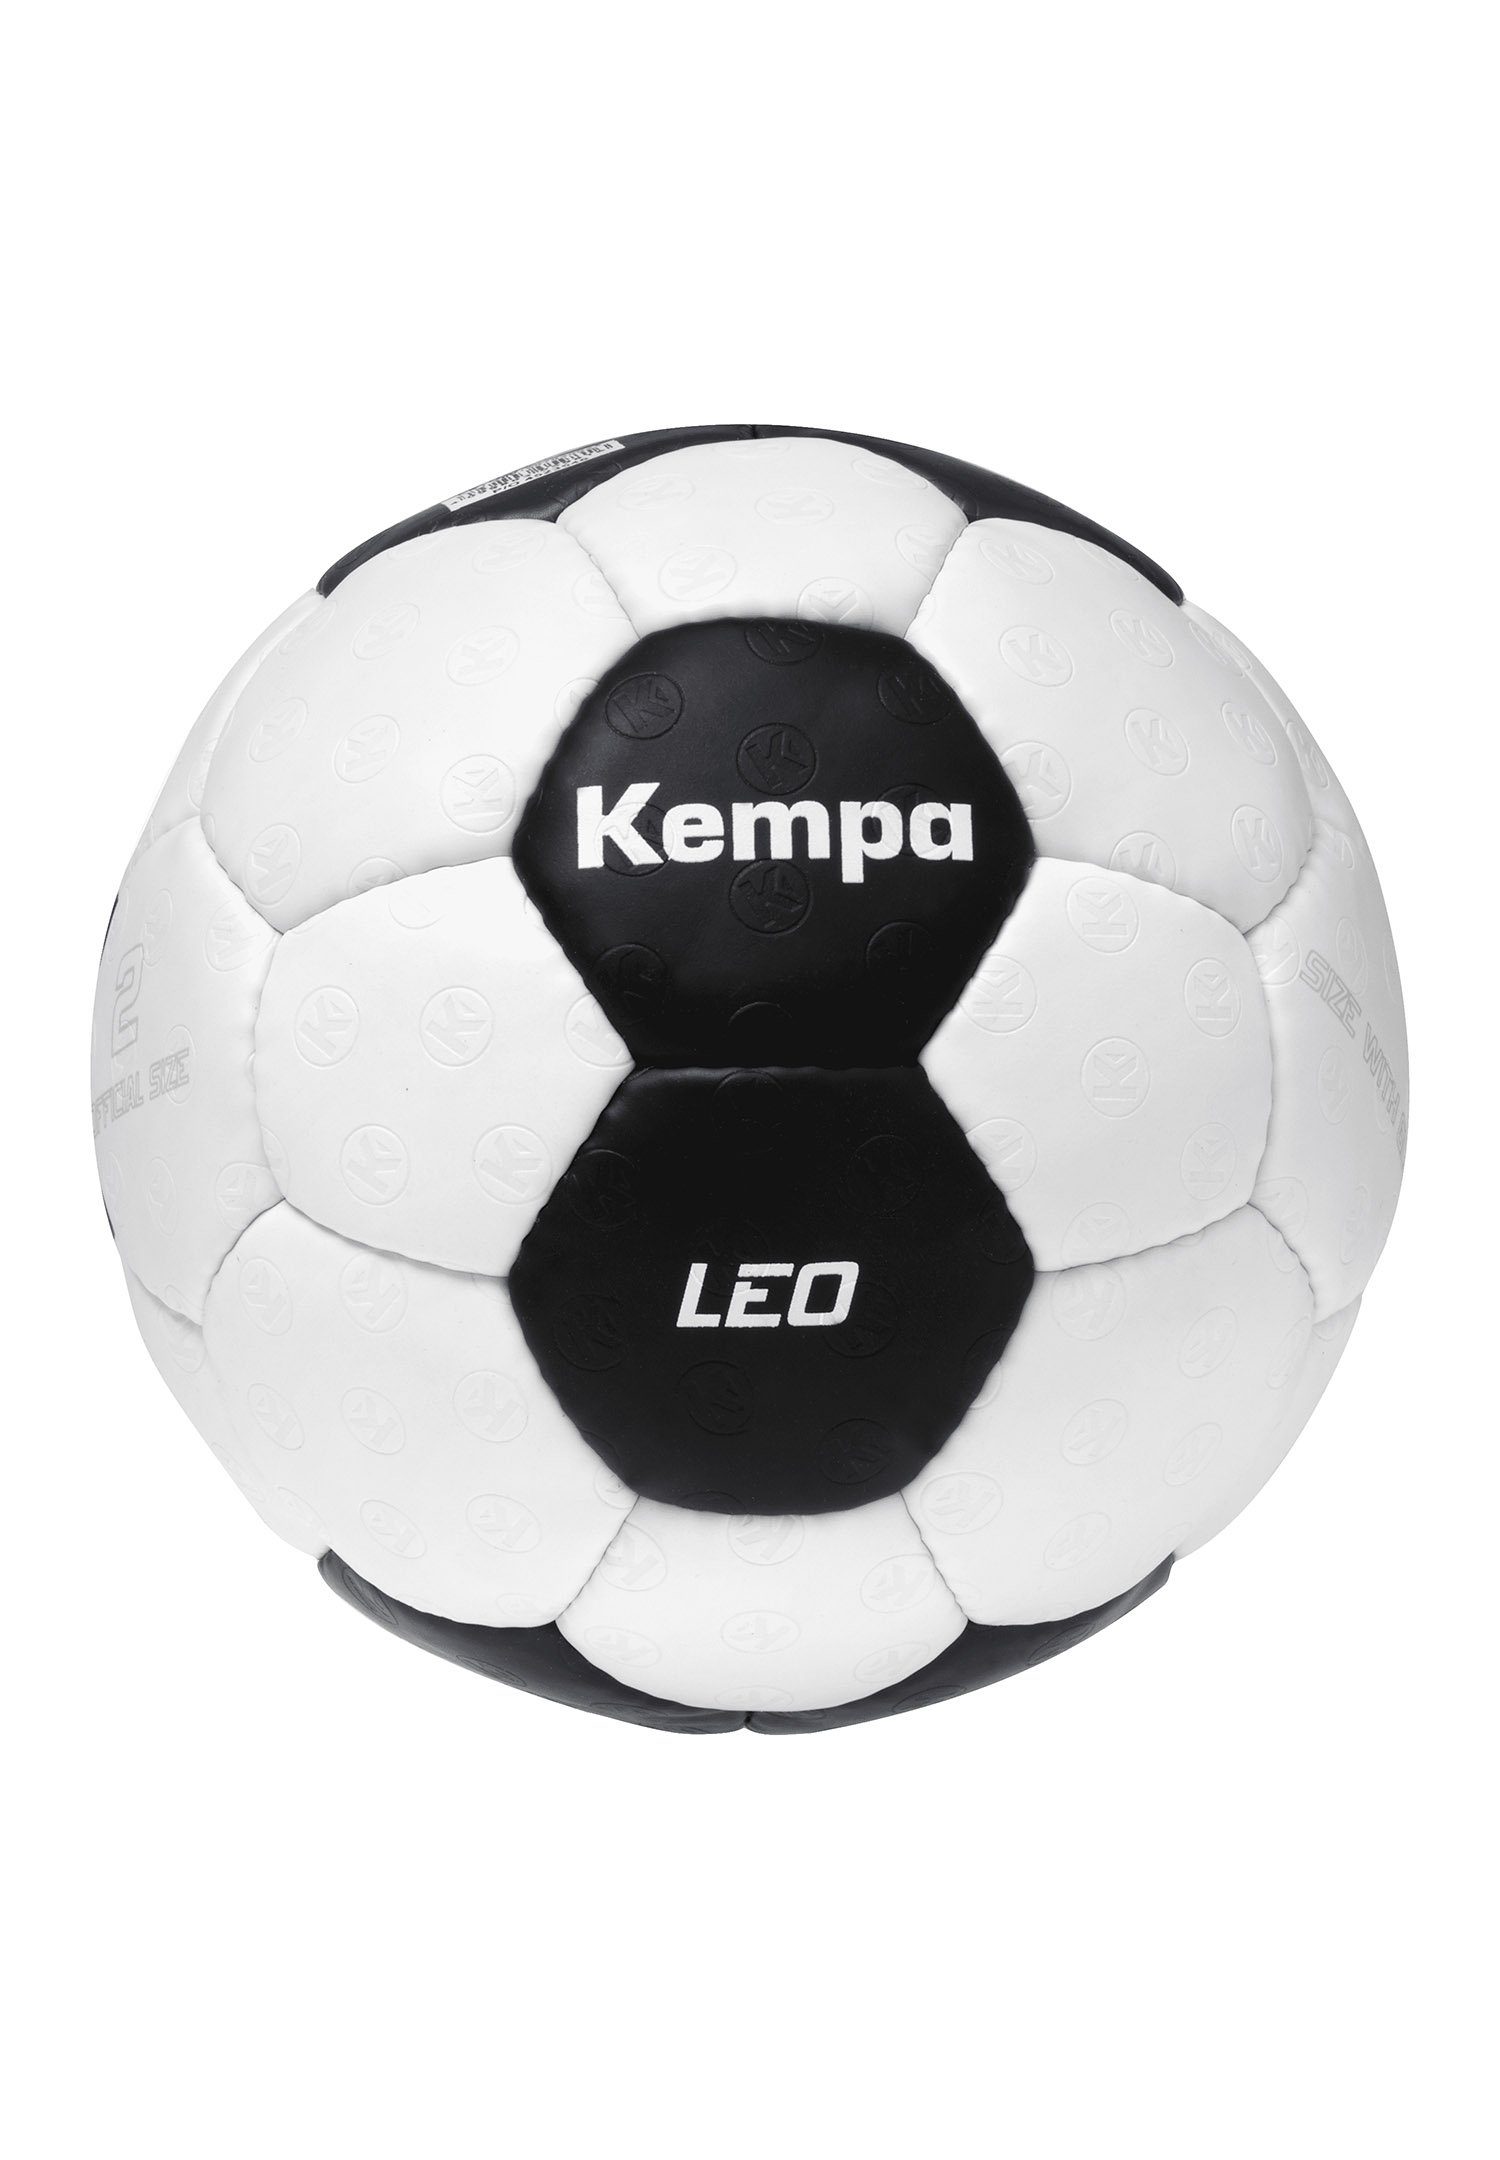 Kempa Fußball Game Changer Leo